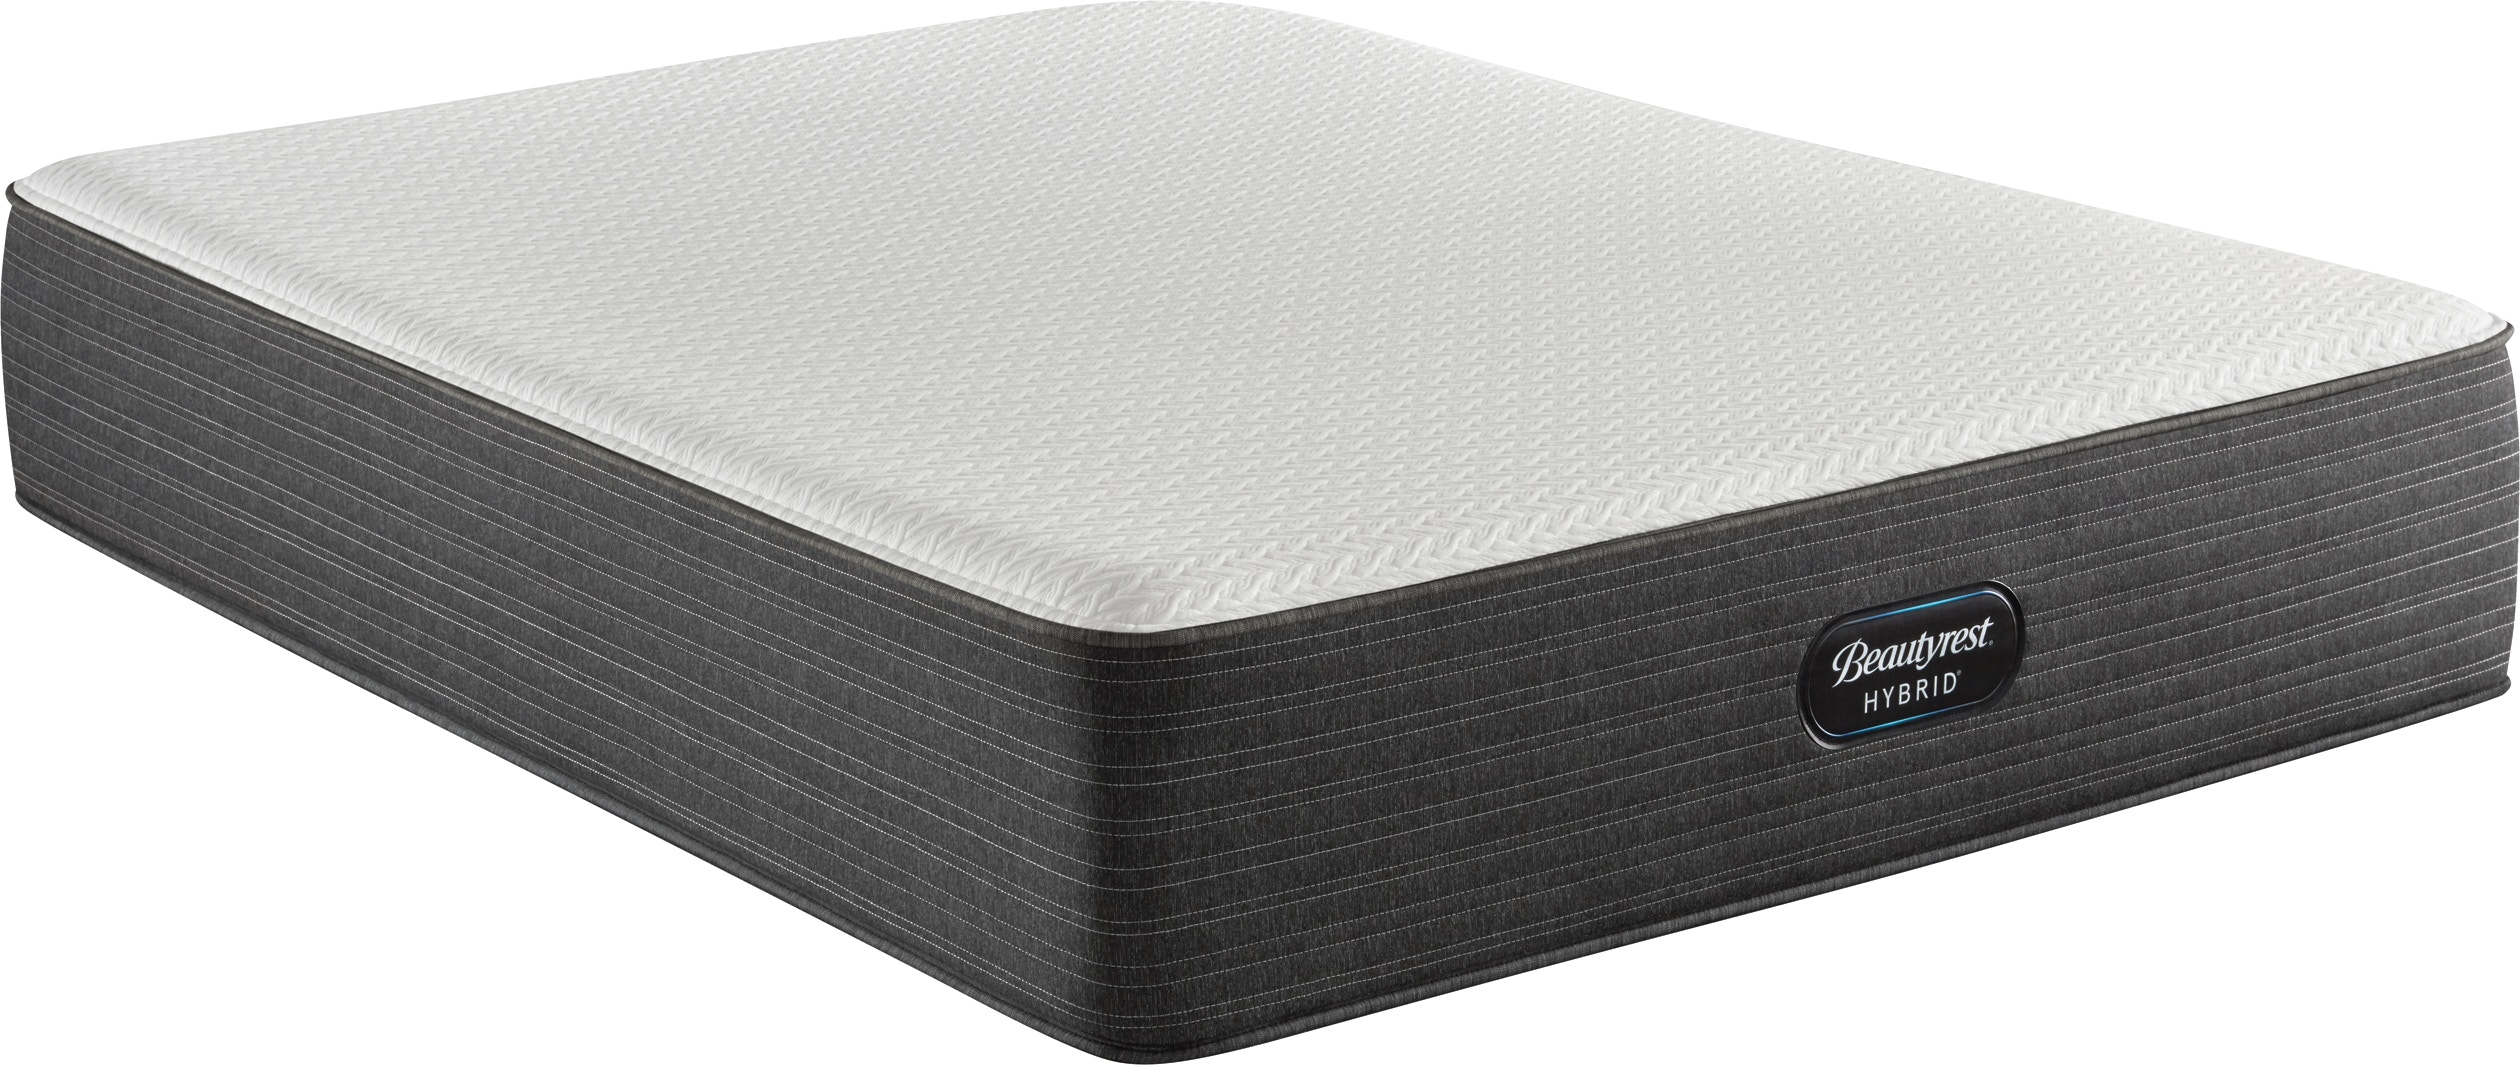 simmons beautyrest hybrid mattress 1000c plush reviews